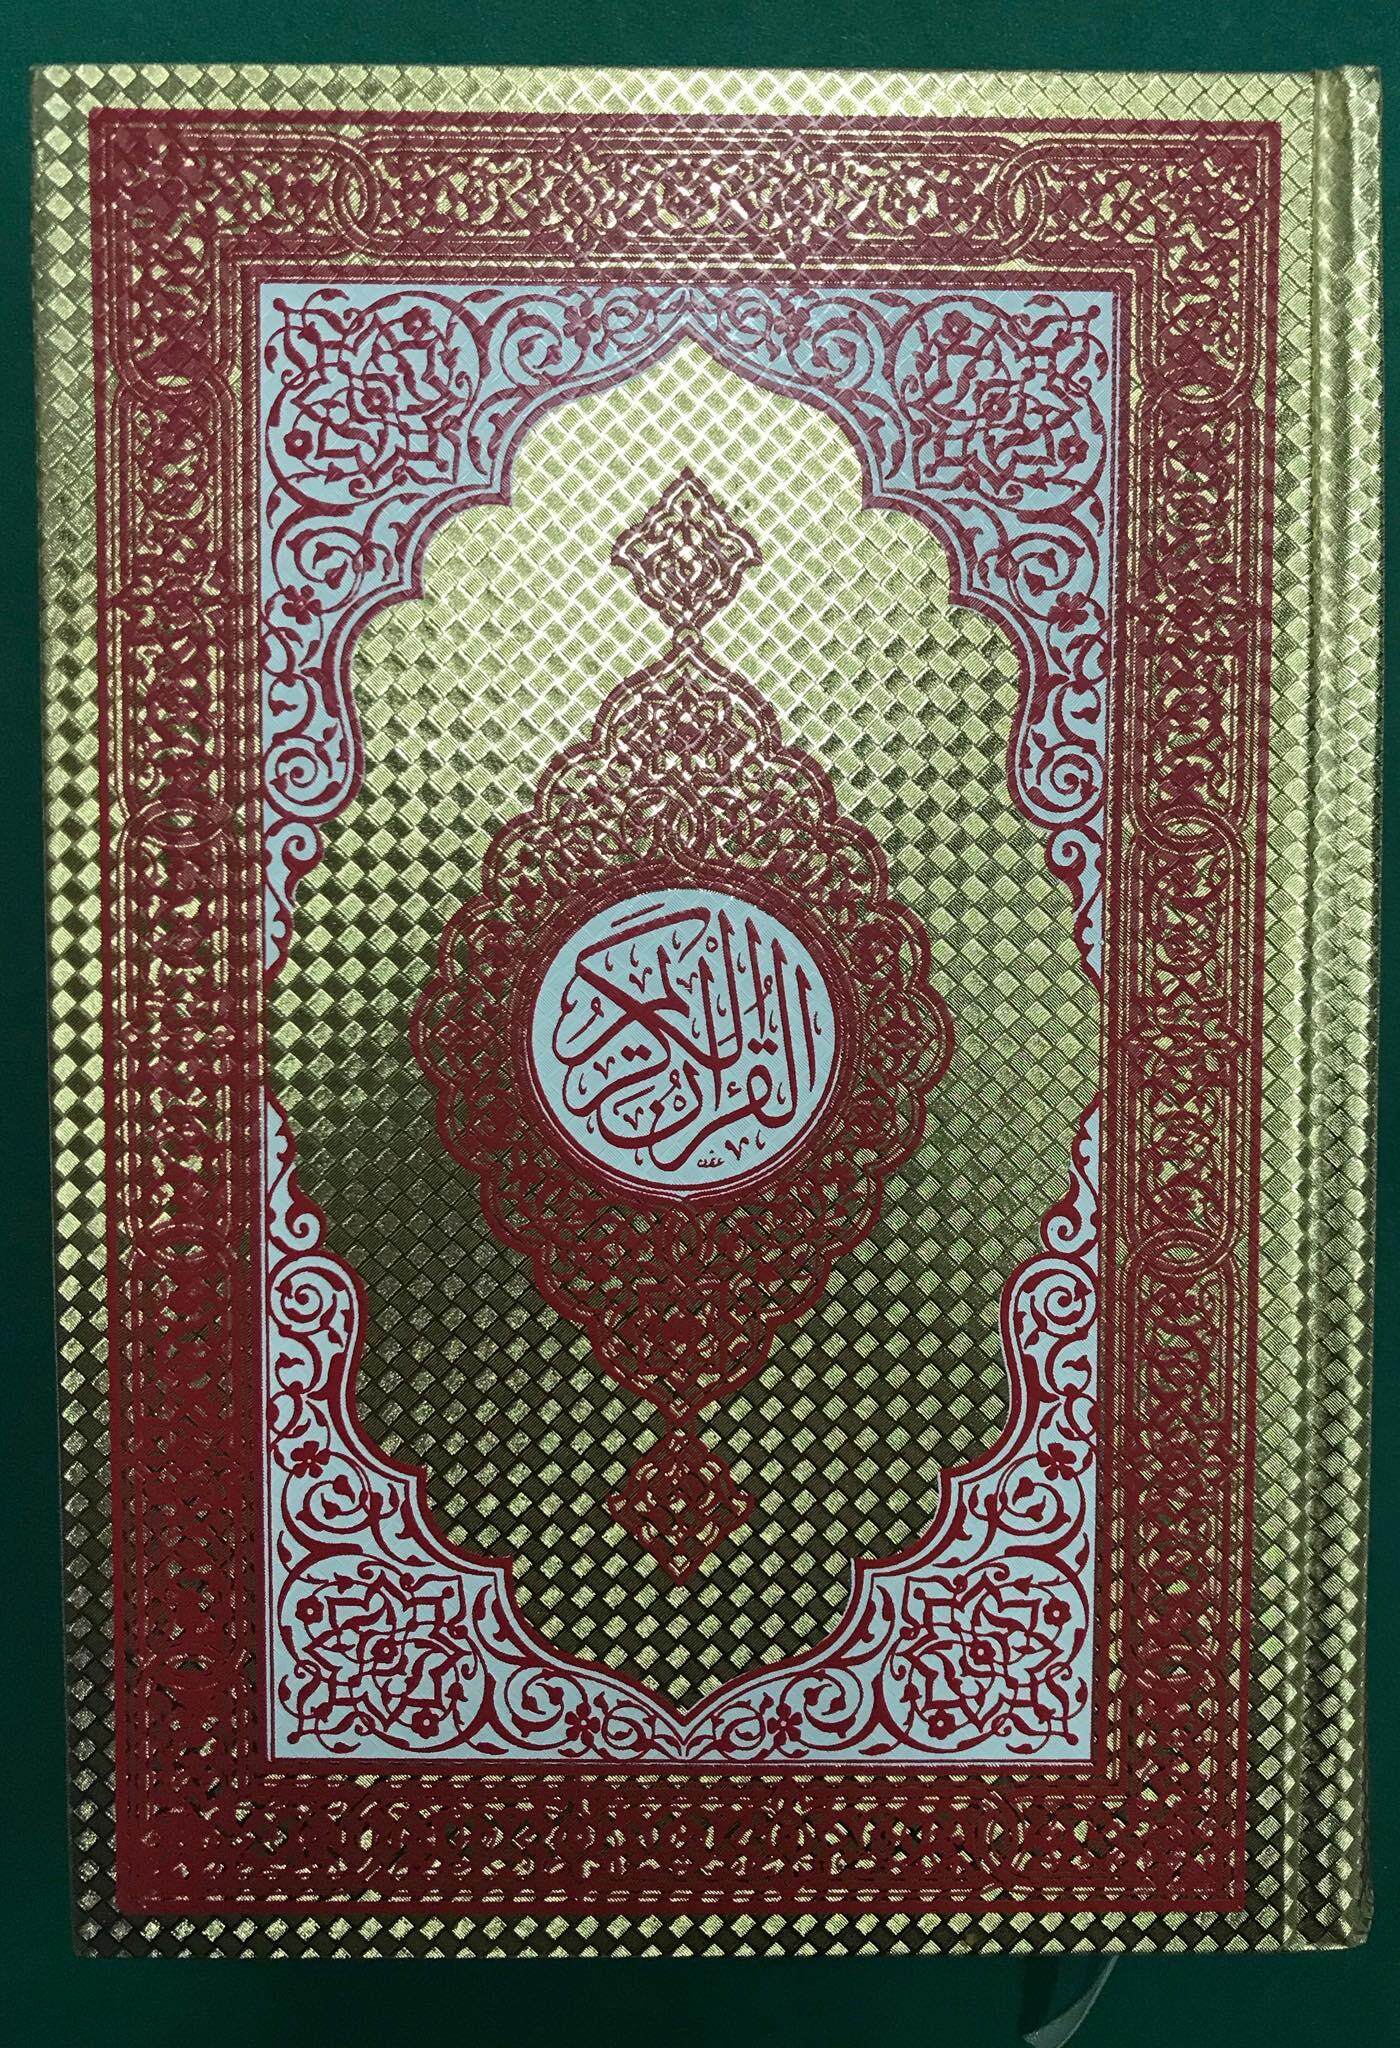 หนังสือ คำภีร์อัลกุรอาน สีทองสวยงาม  เล่มใหญ่(Al Quran ) อ่านง่าย